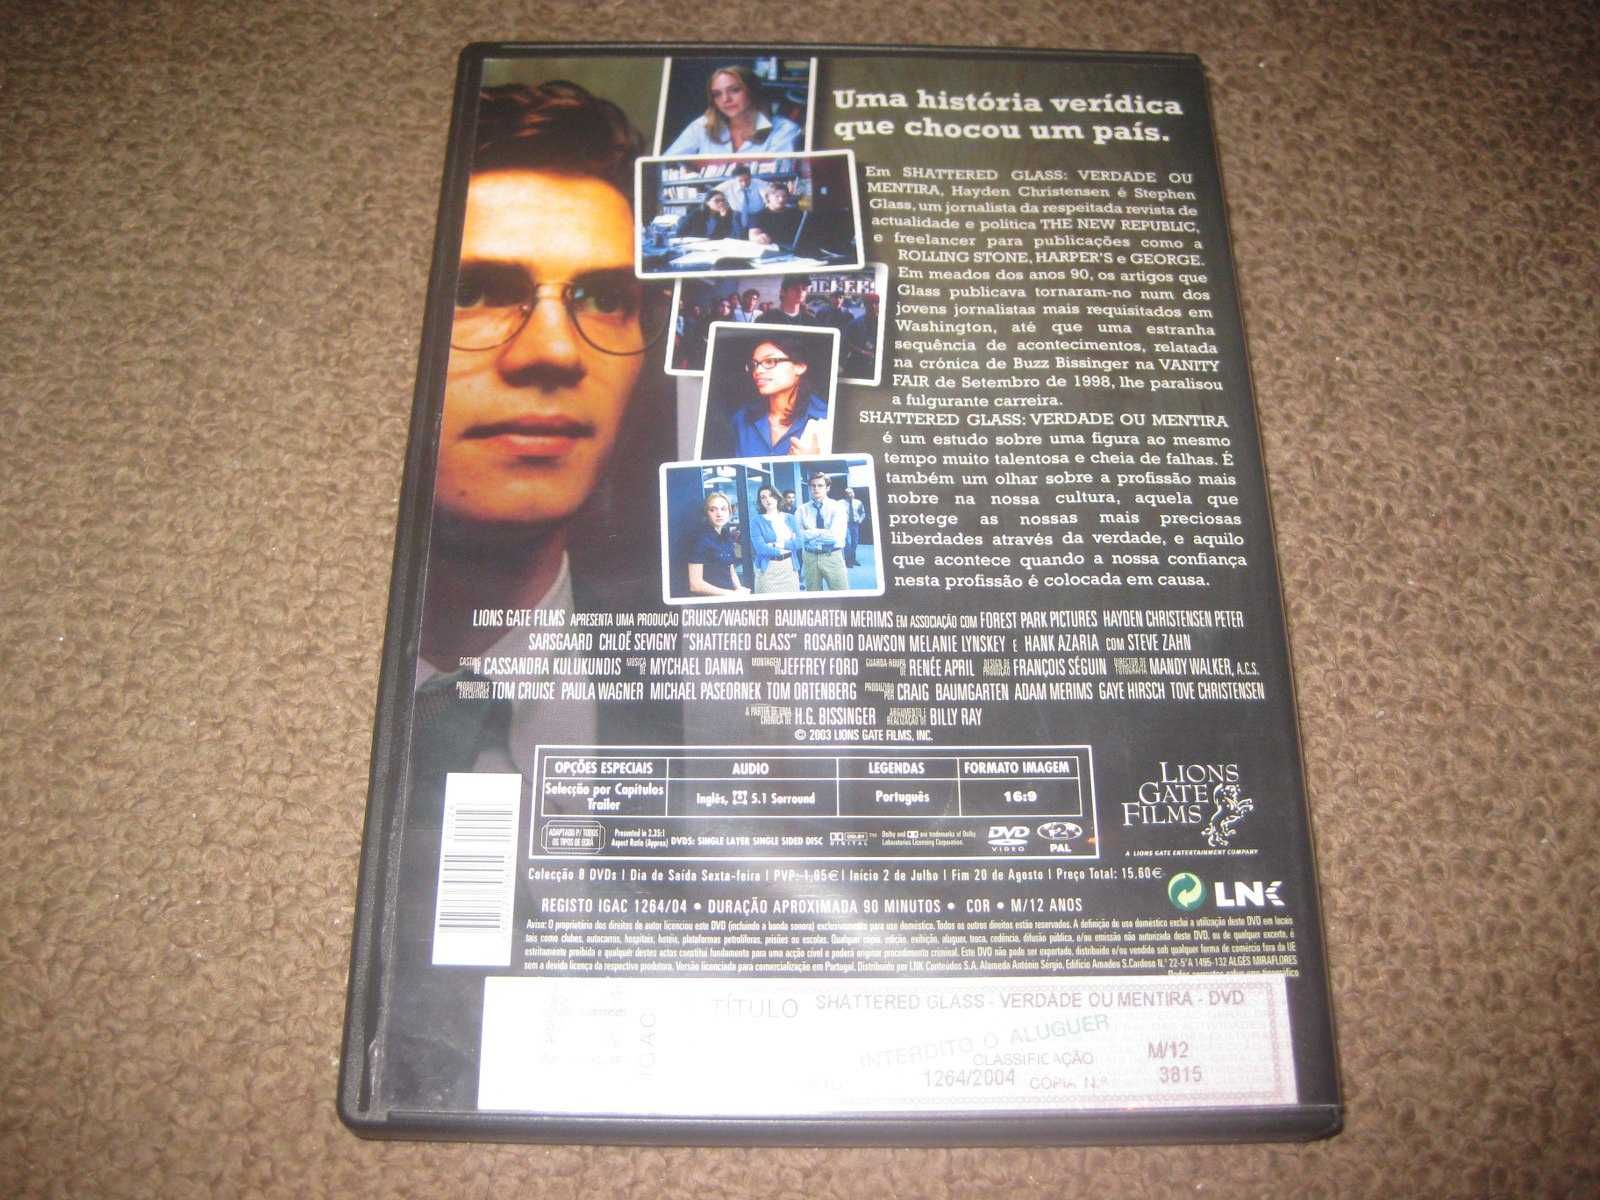 DVD "Shattered Glass: Verdade ou Mentira" com Hayden Christensen